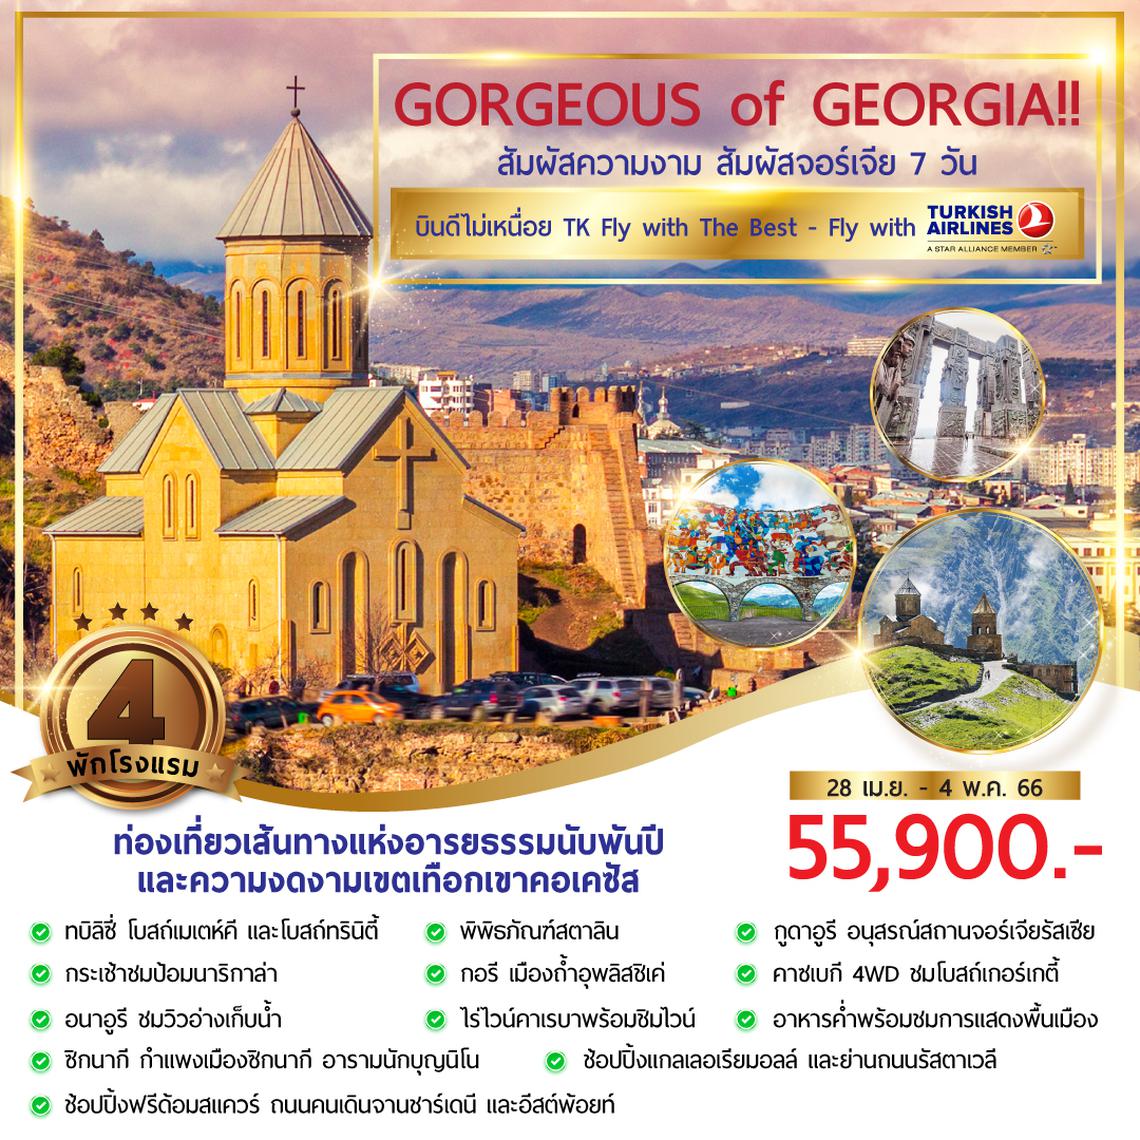 GORGEOUS OF GEORGIA